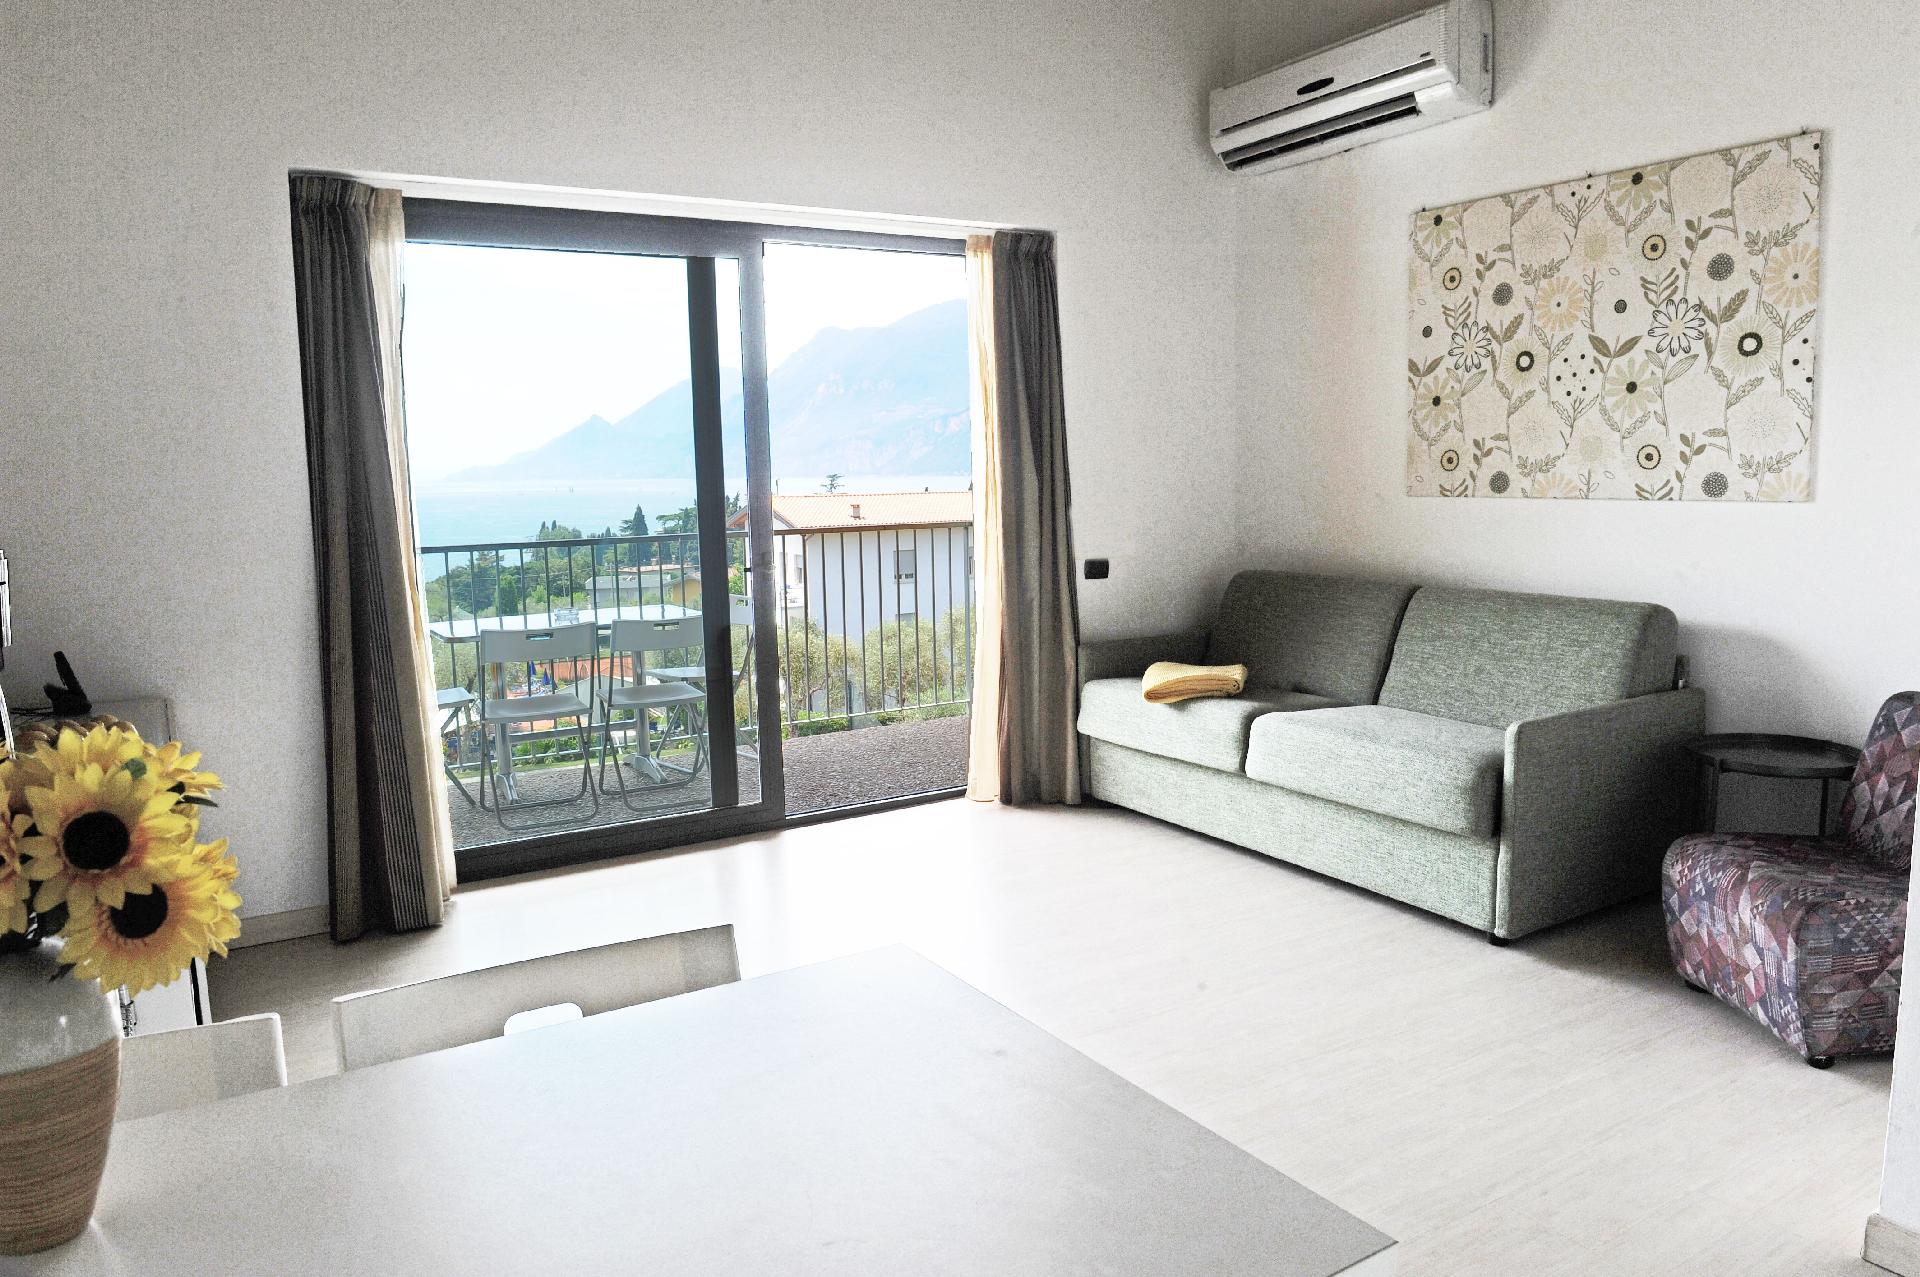 Ferienwohnung für 4 Personen ca. 40 m² i  in Italien